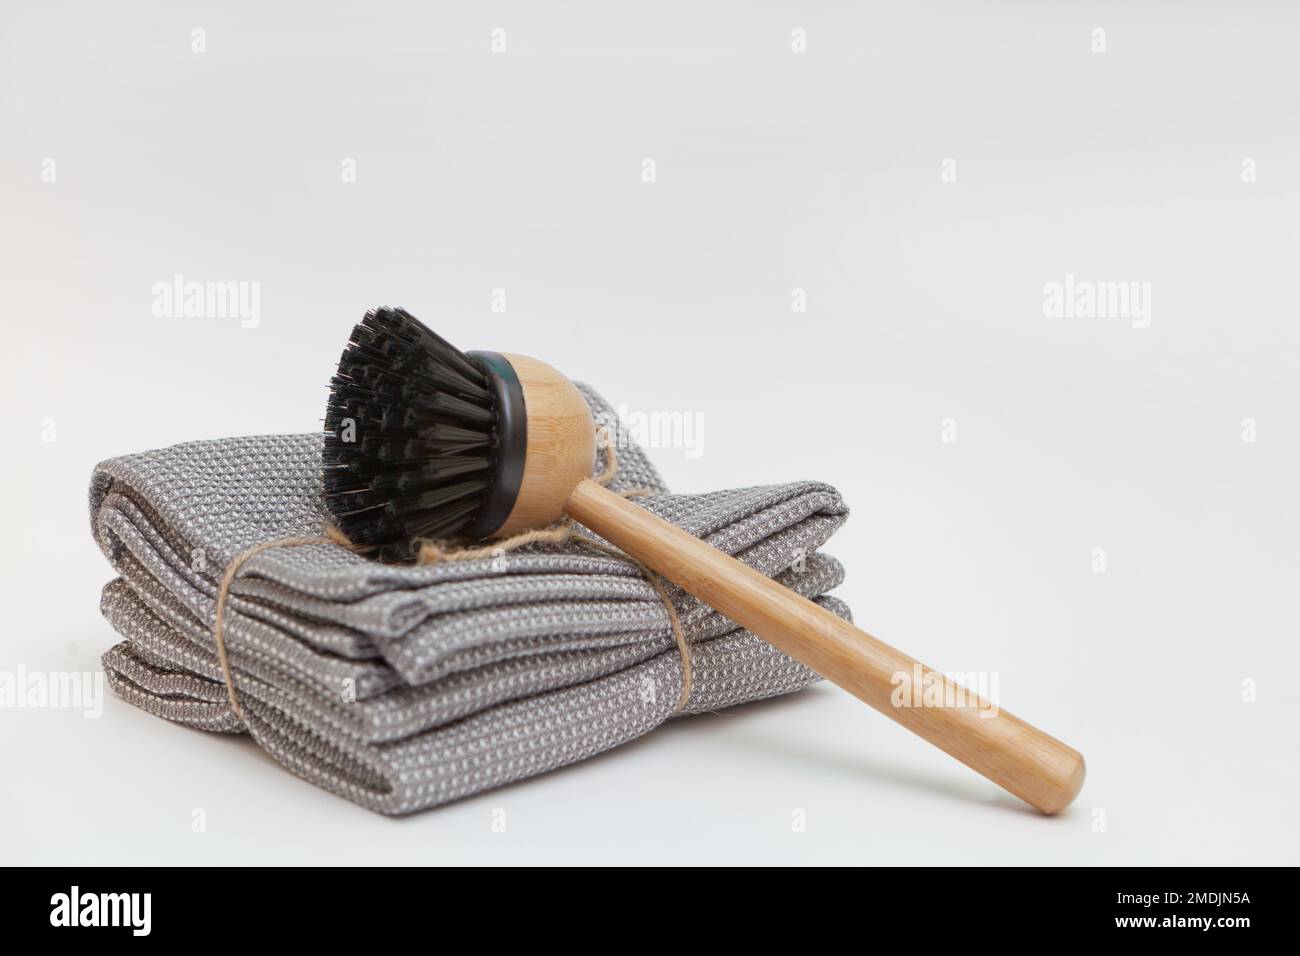 lave-vaisselle, brosse en bambou et serviettes grises. Concept de vie durable zéro déchet. Nettoyer sans déchets. Aucun objet plastique. Banque D'Images